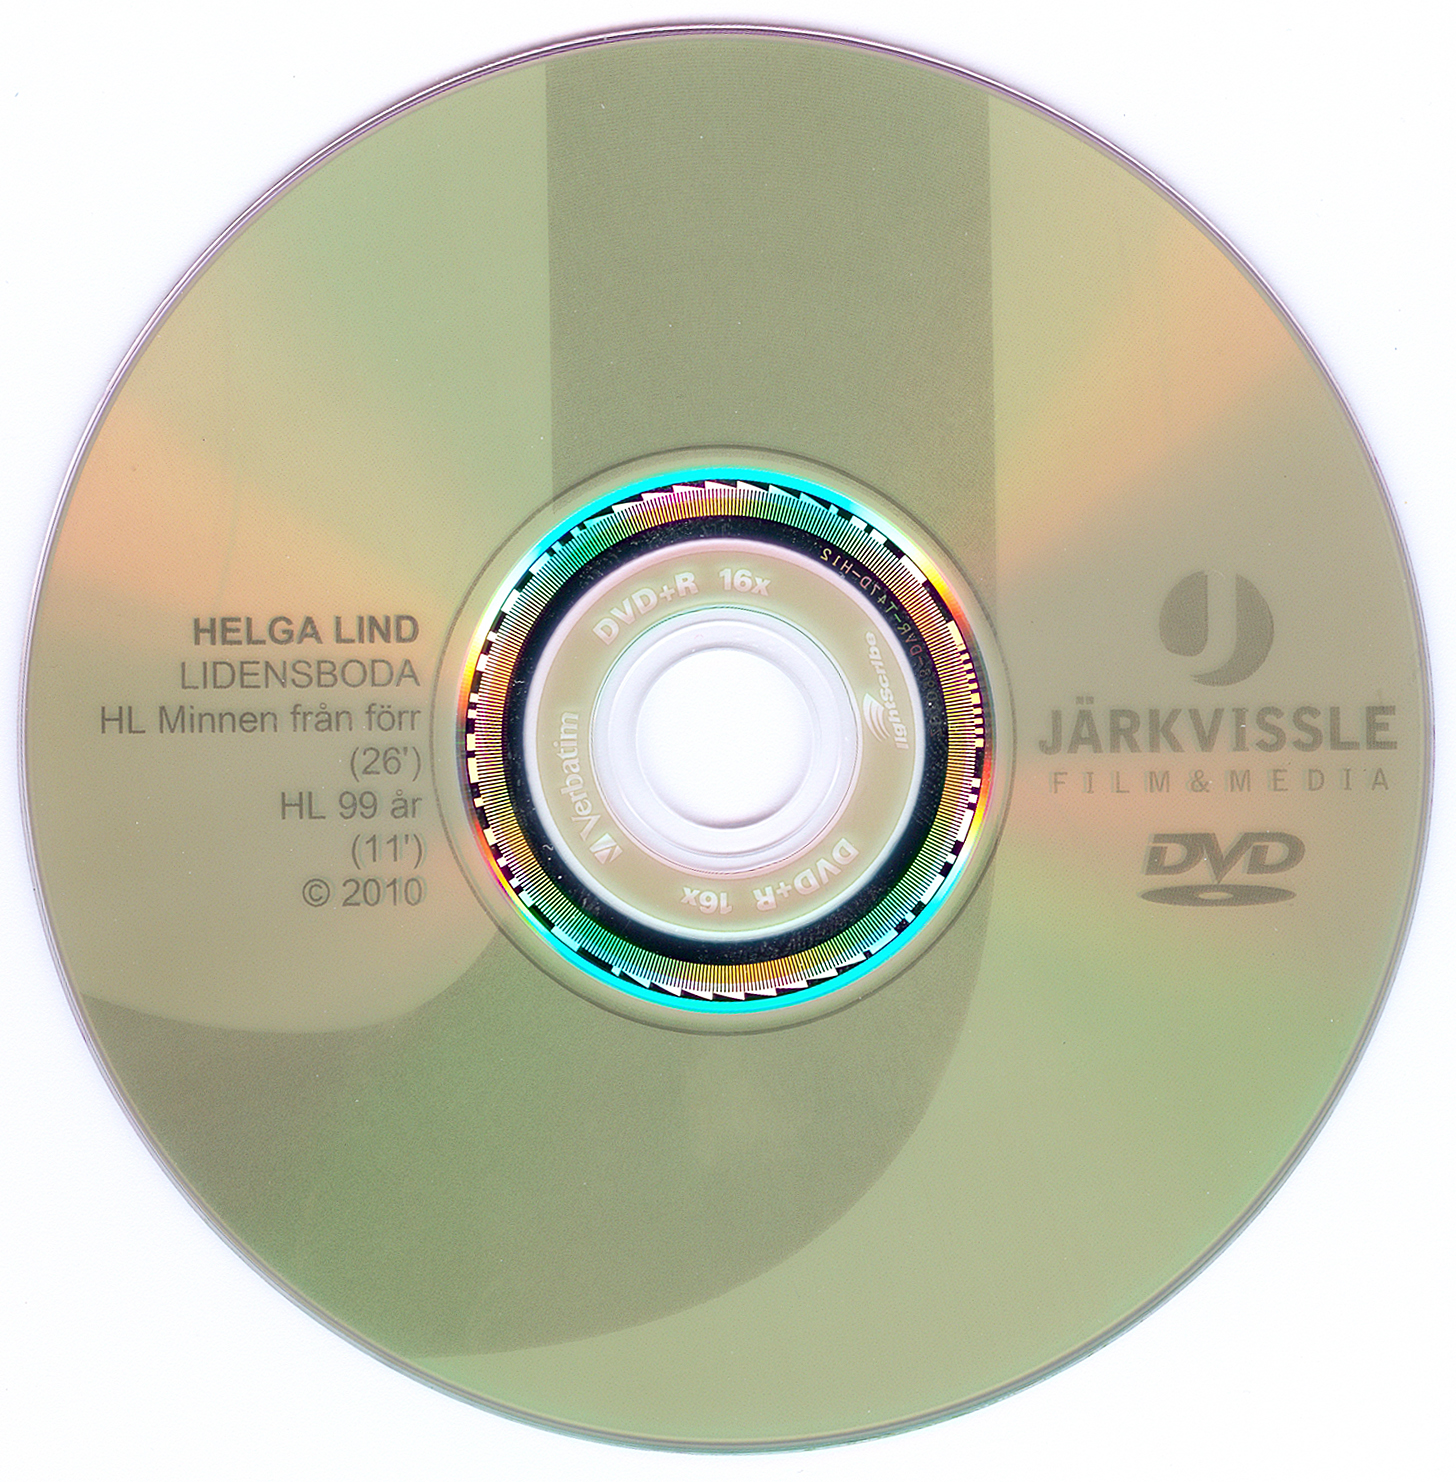 DVD-skivans etikett